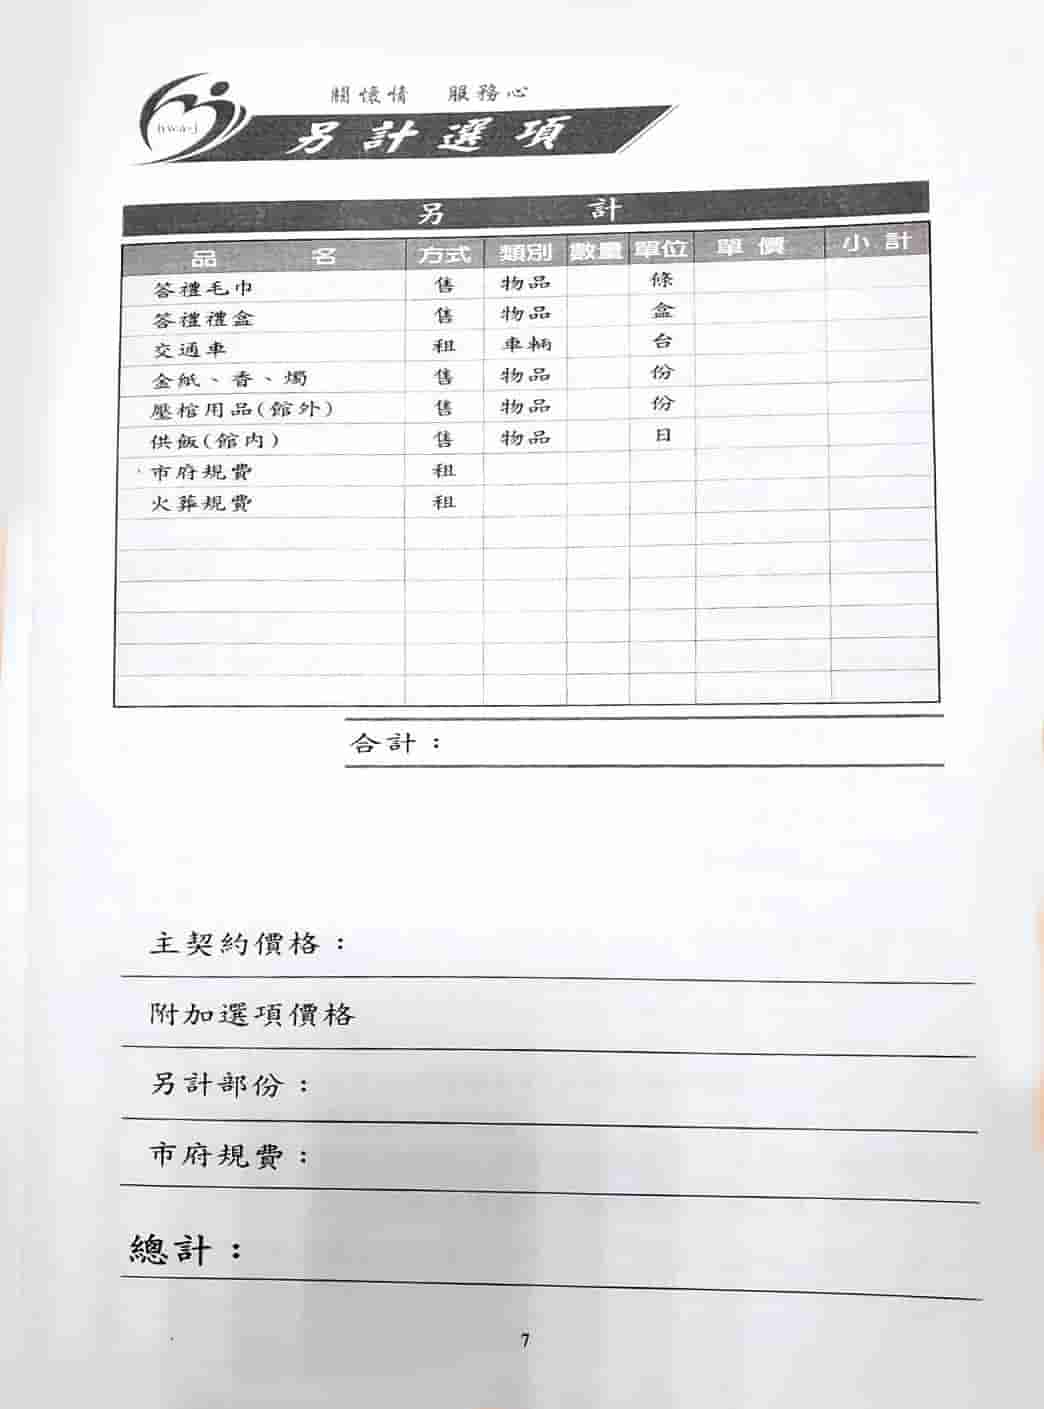 華中禮儀服務流程表